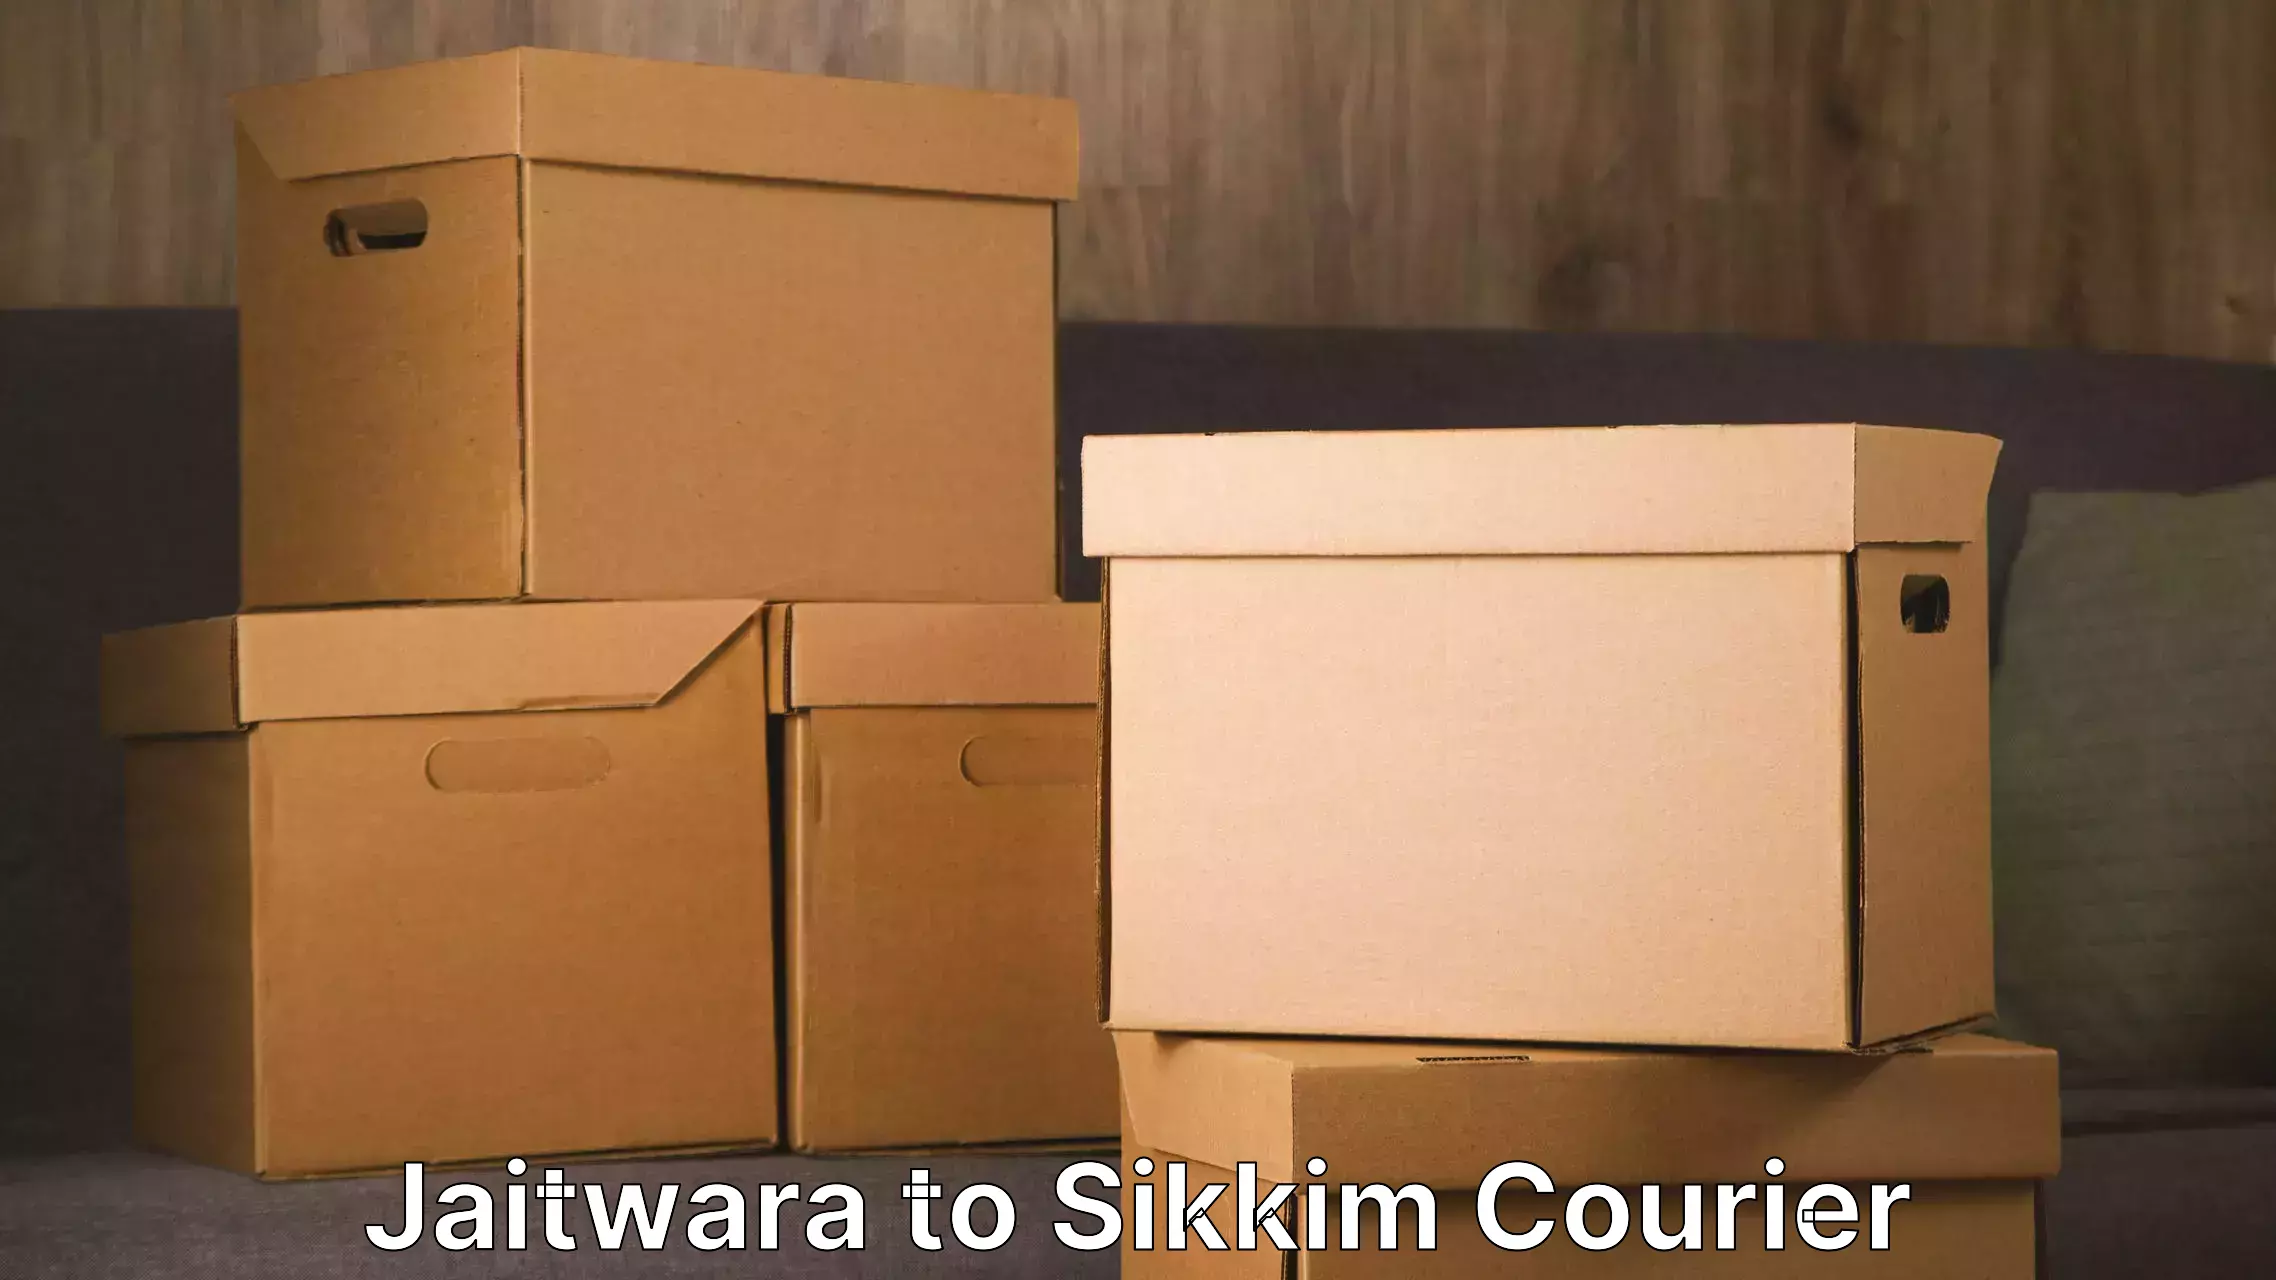 Furniture transport specialists Jaitwara to Sikkim